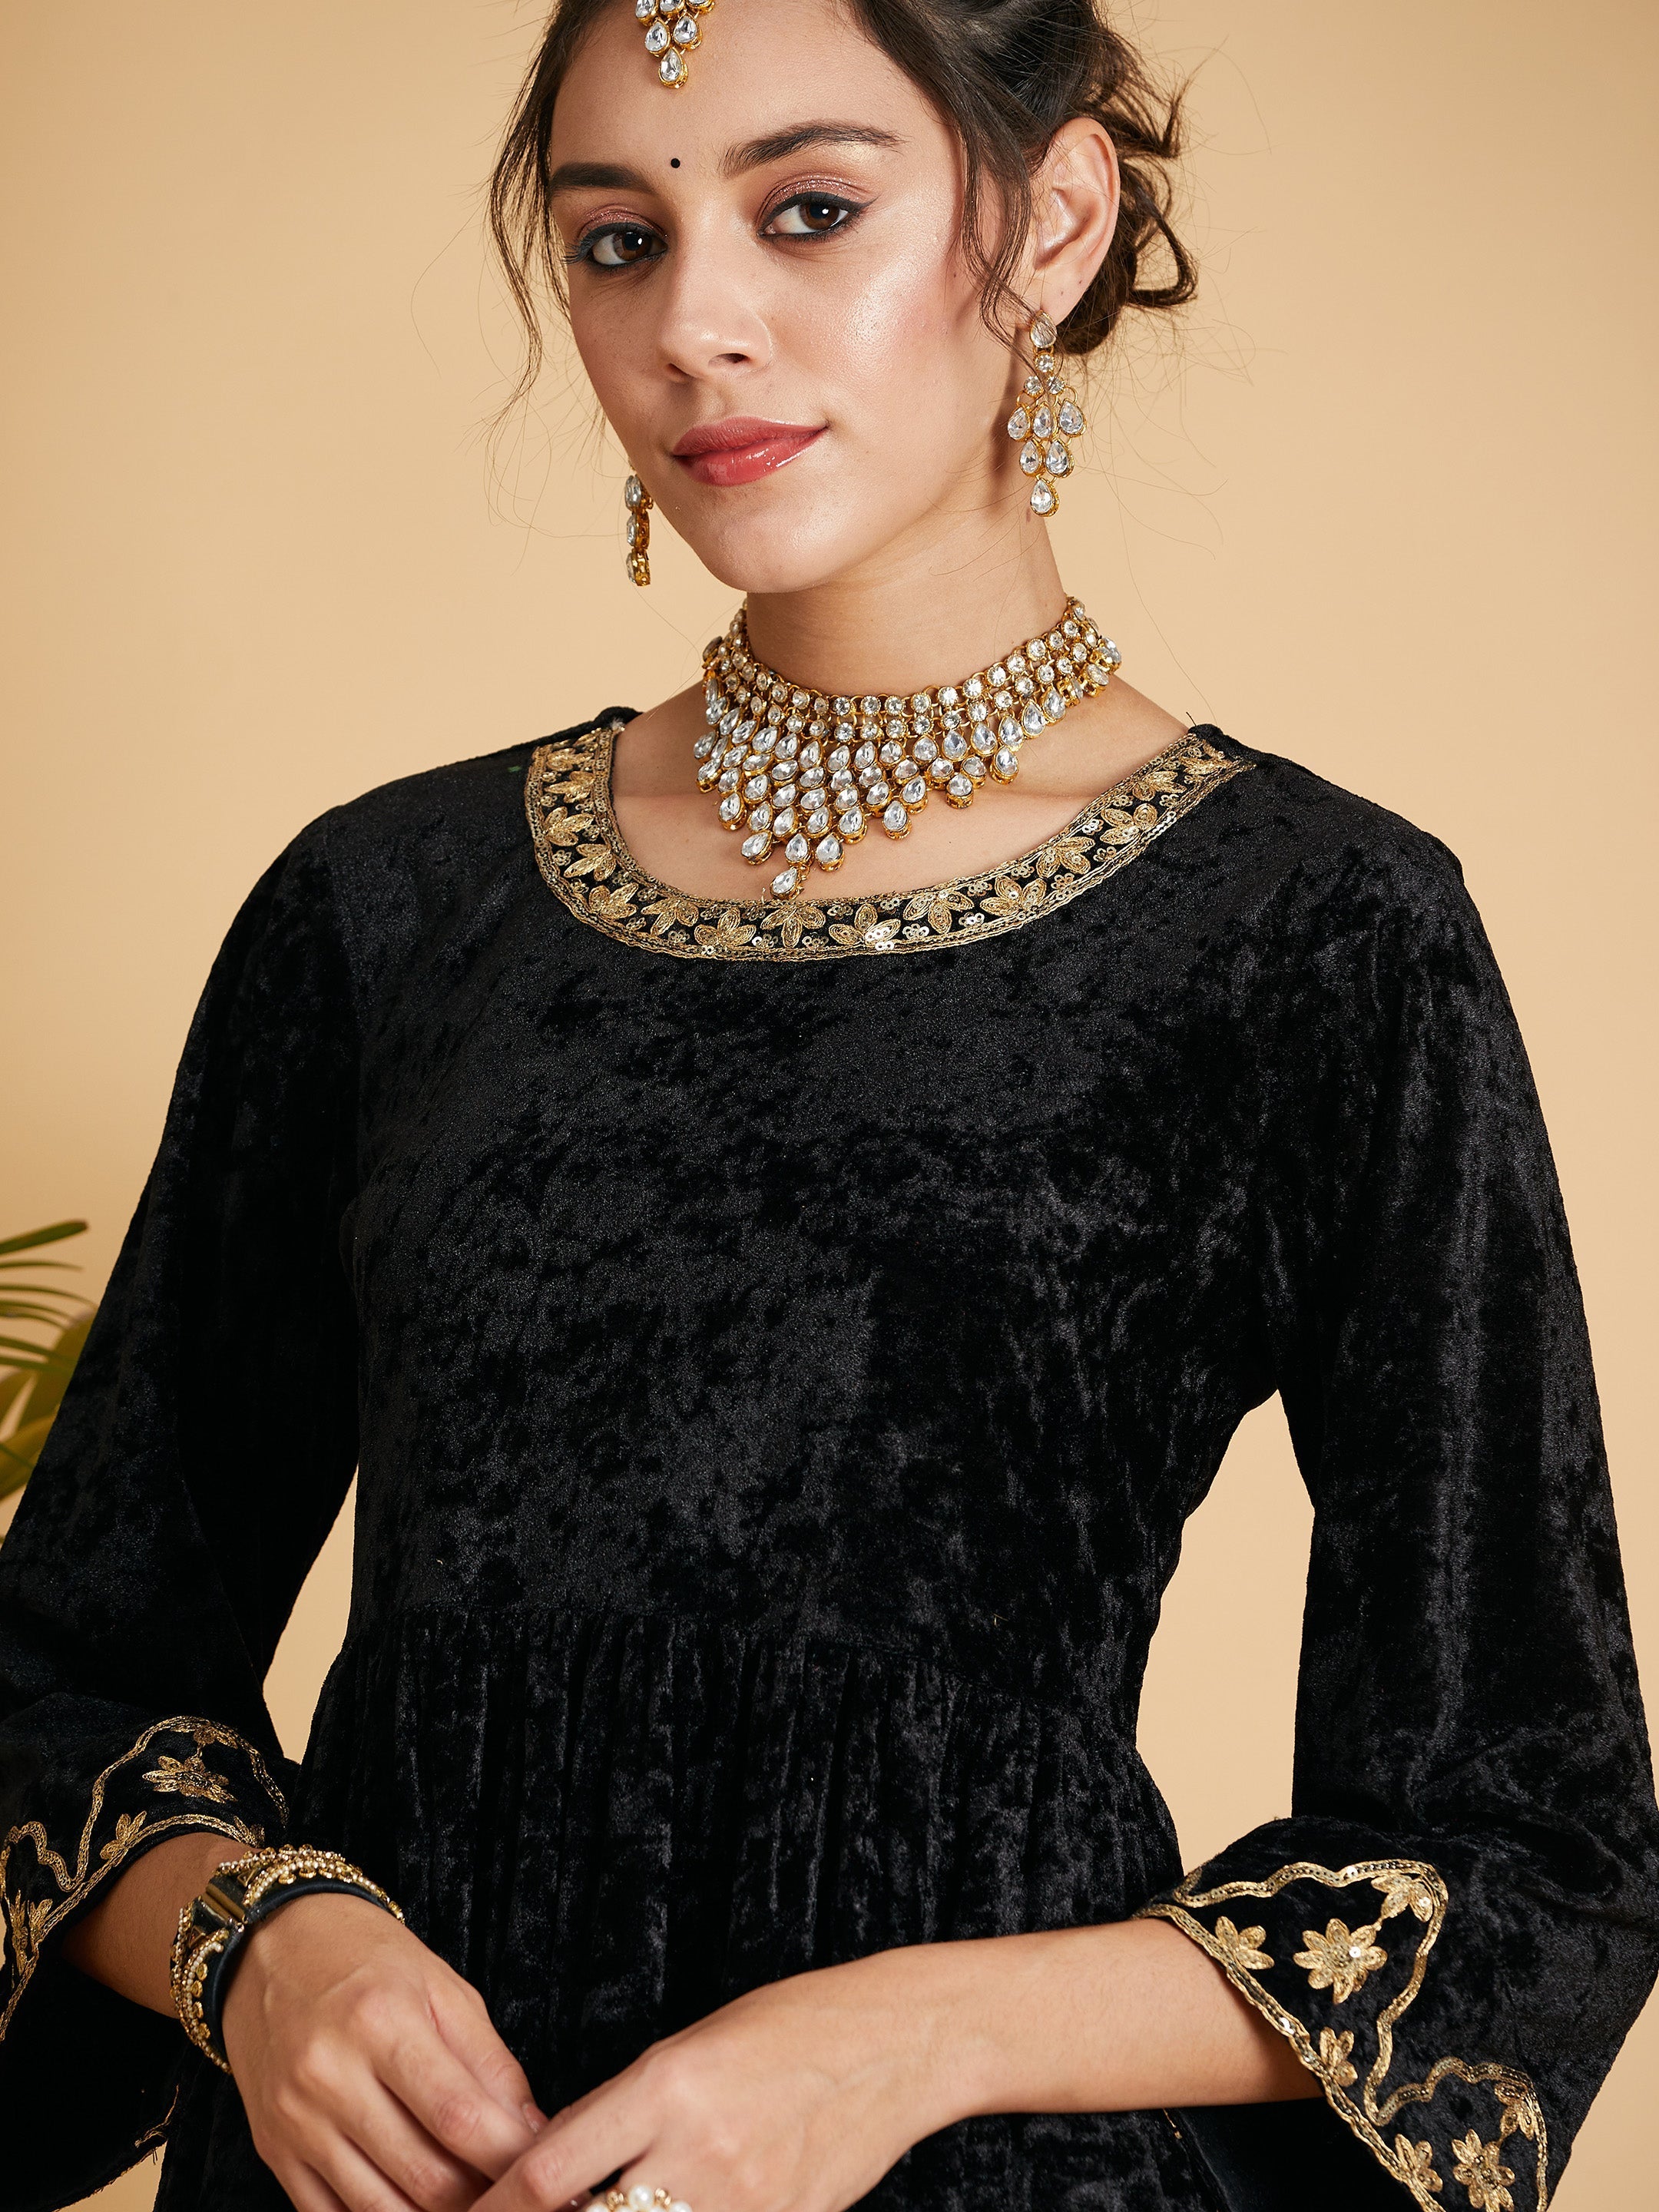 Women's Black Velvet Embroidered Dress With Pants - Lyush